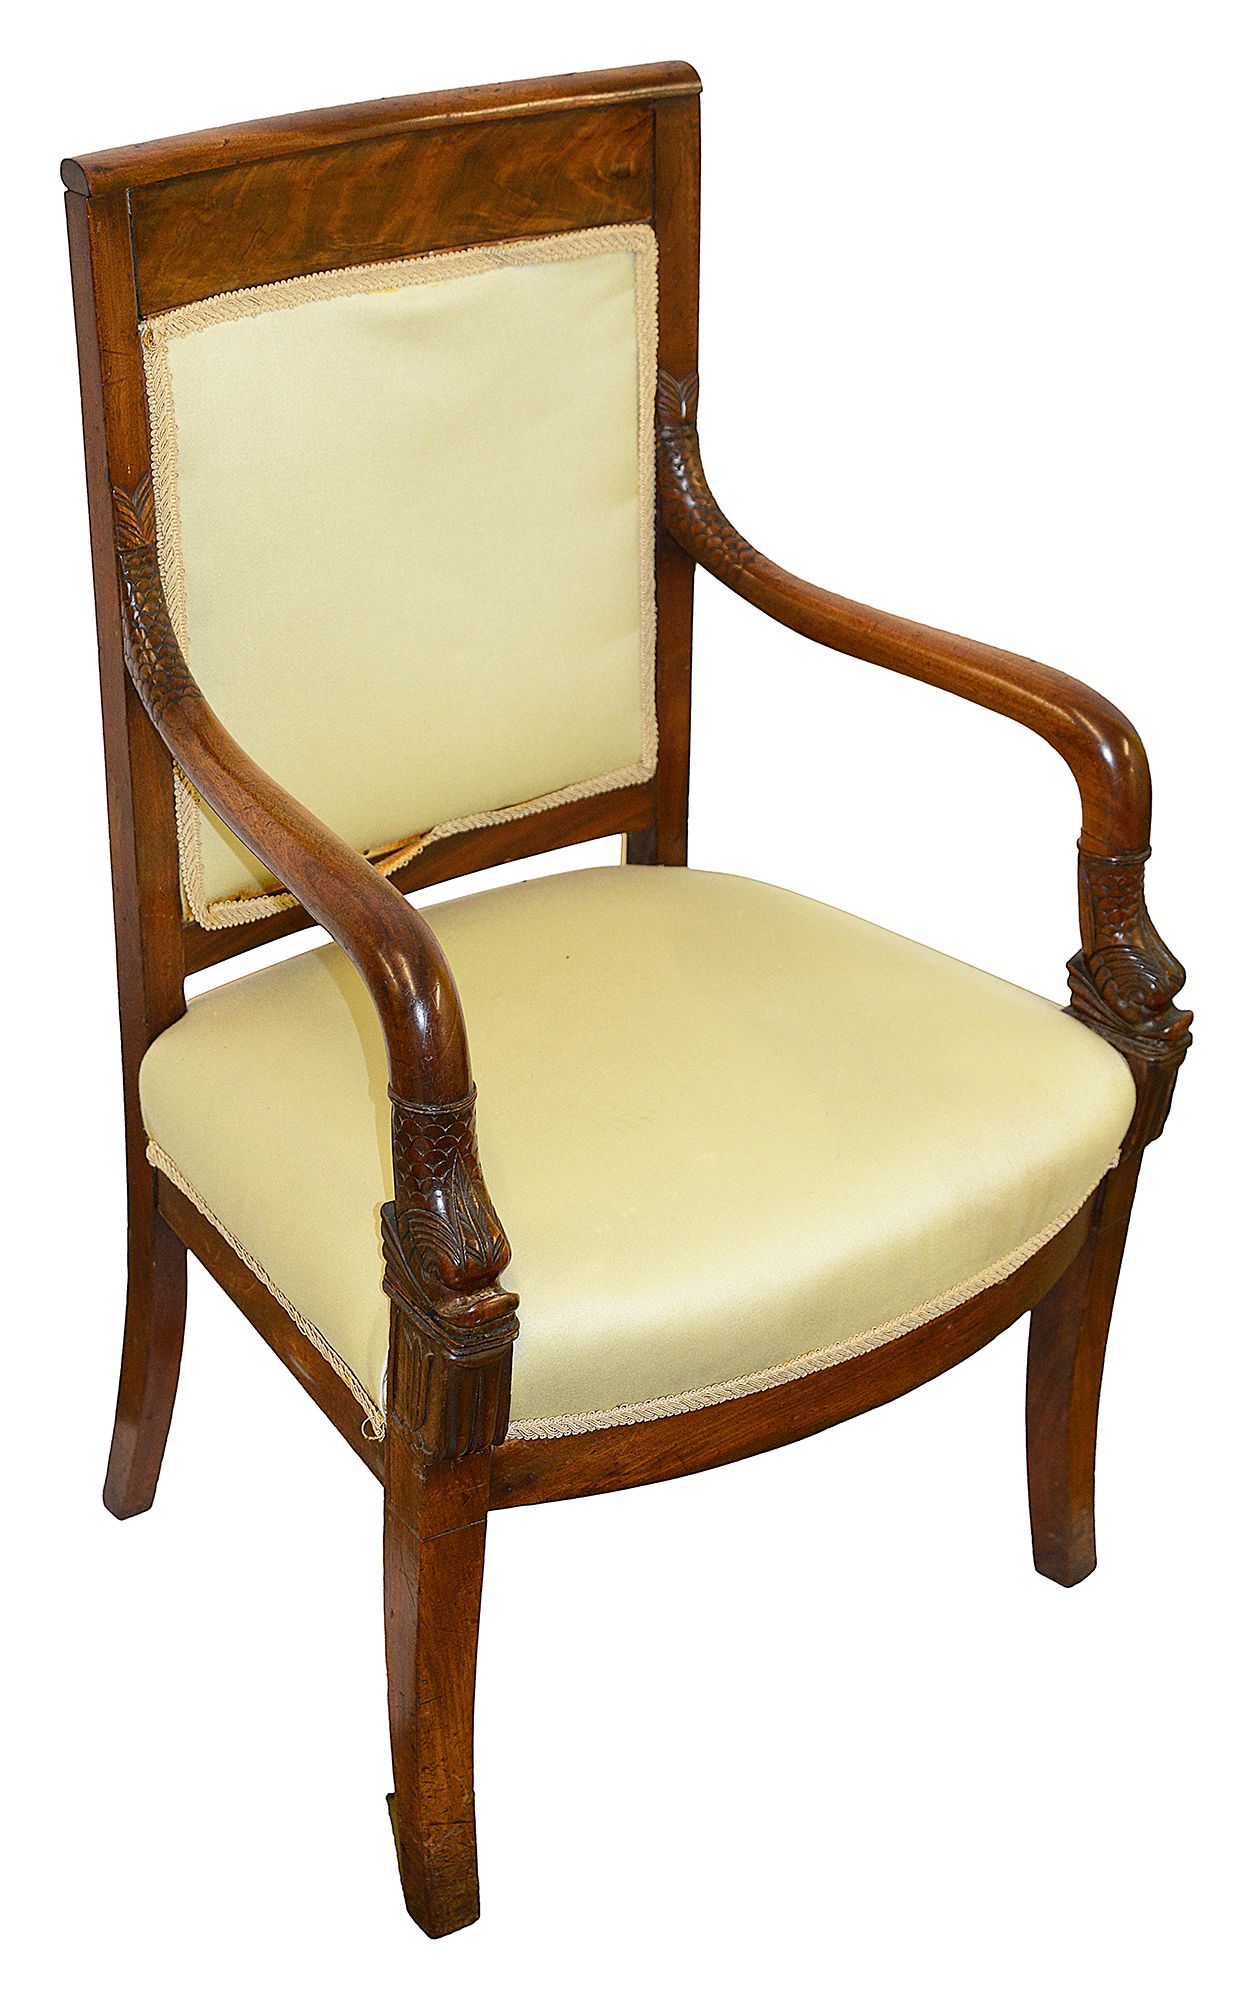 A French Empire mahogany armchair, 19th century